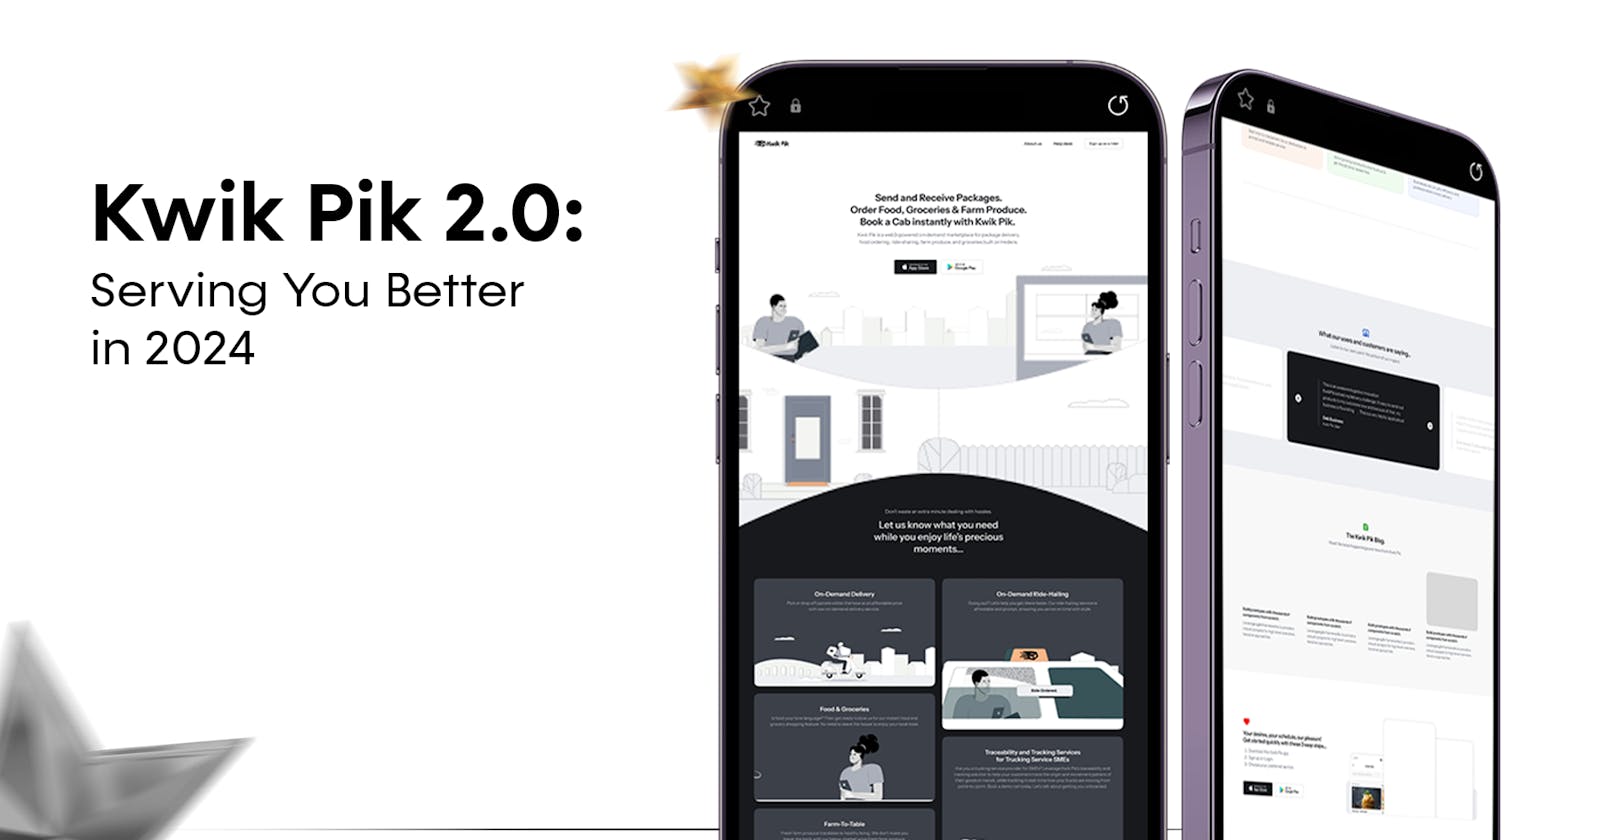 Kwik Pik 2.0: Serving You Better in 2024